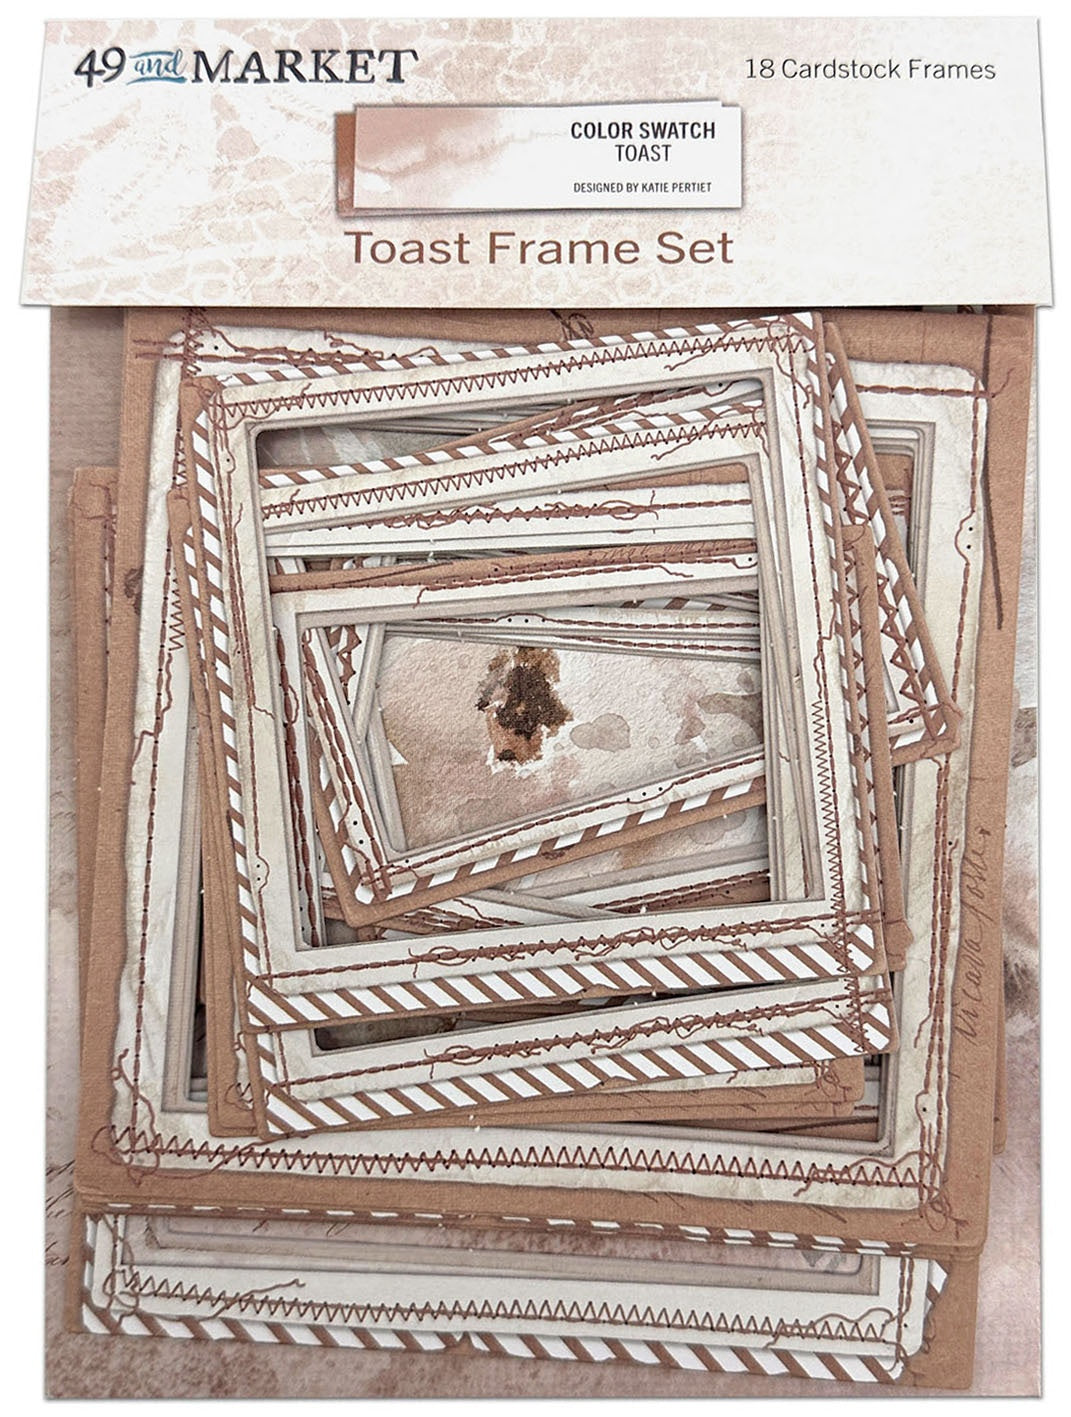 Toast Frame Set